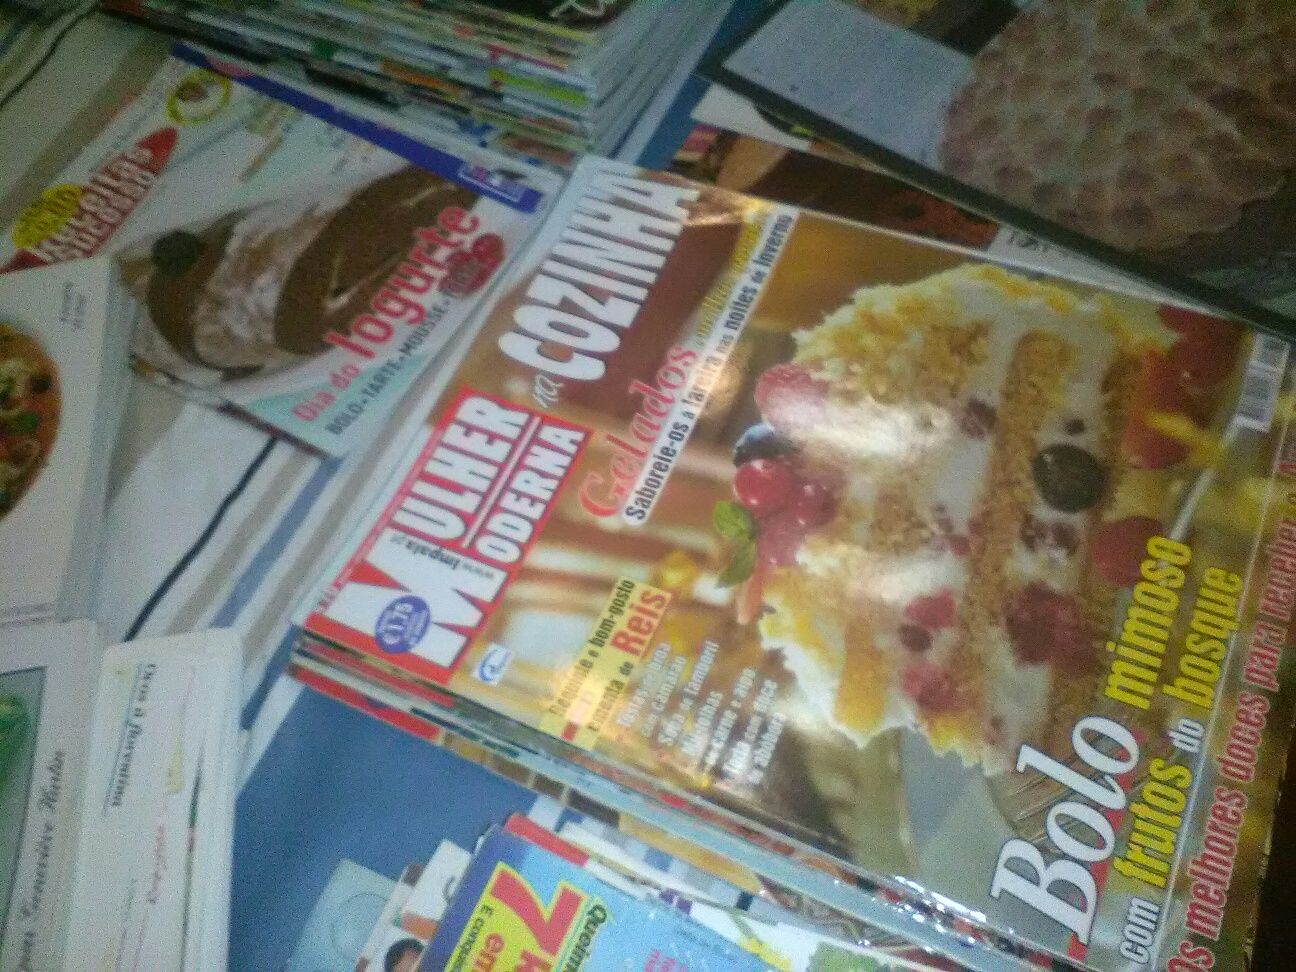 Lote de Livros e Revistas de Culinária